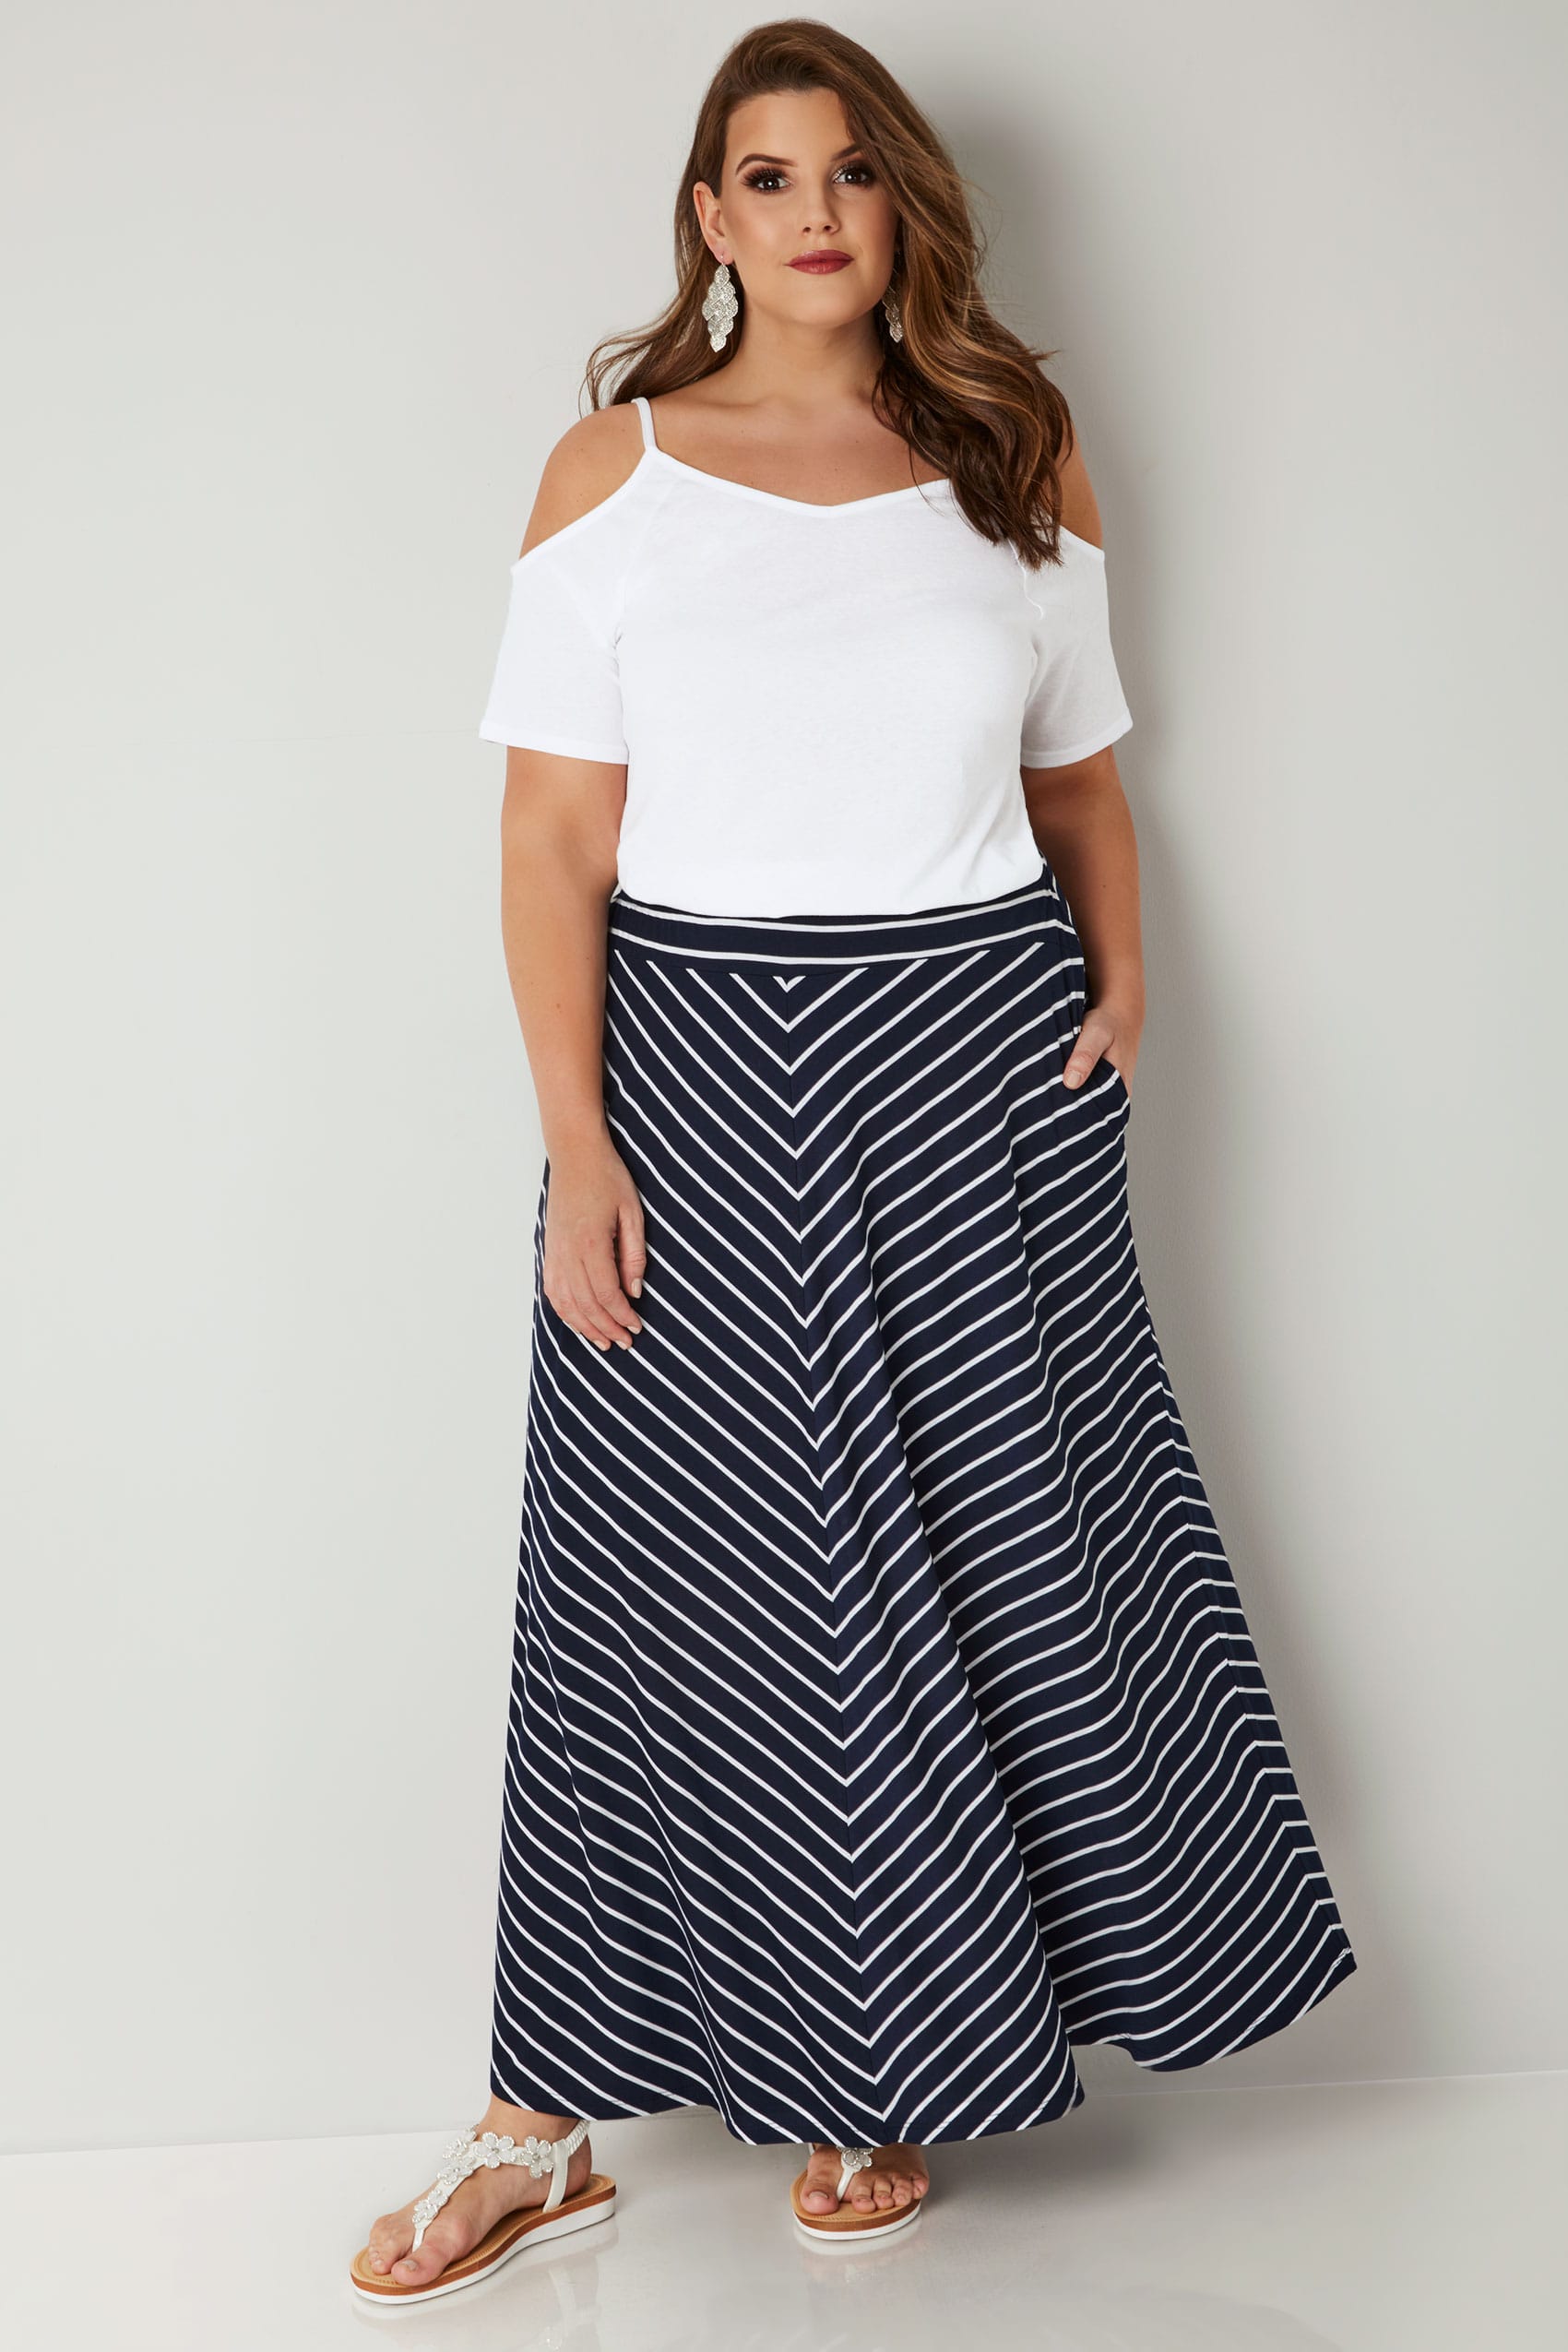 Navy & White Striped Maxi Skirt, Plus size 16 to 36